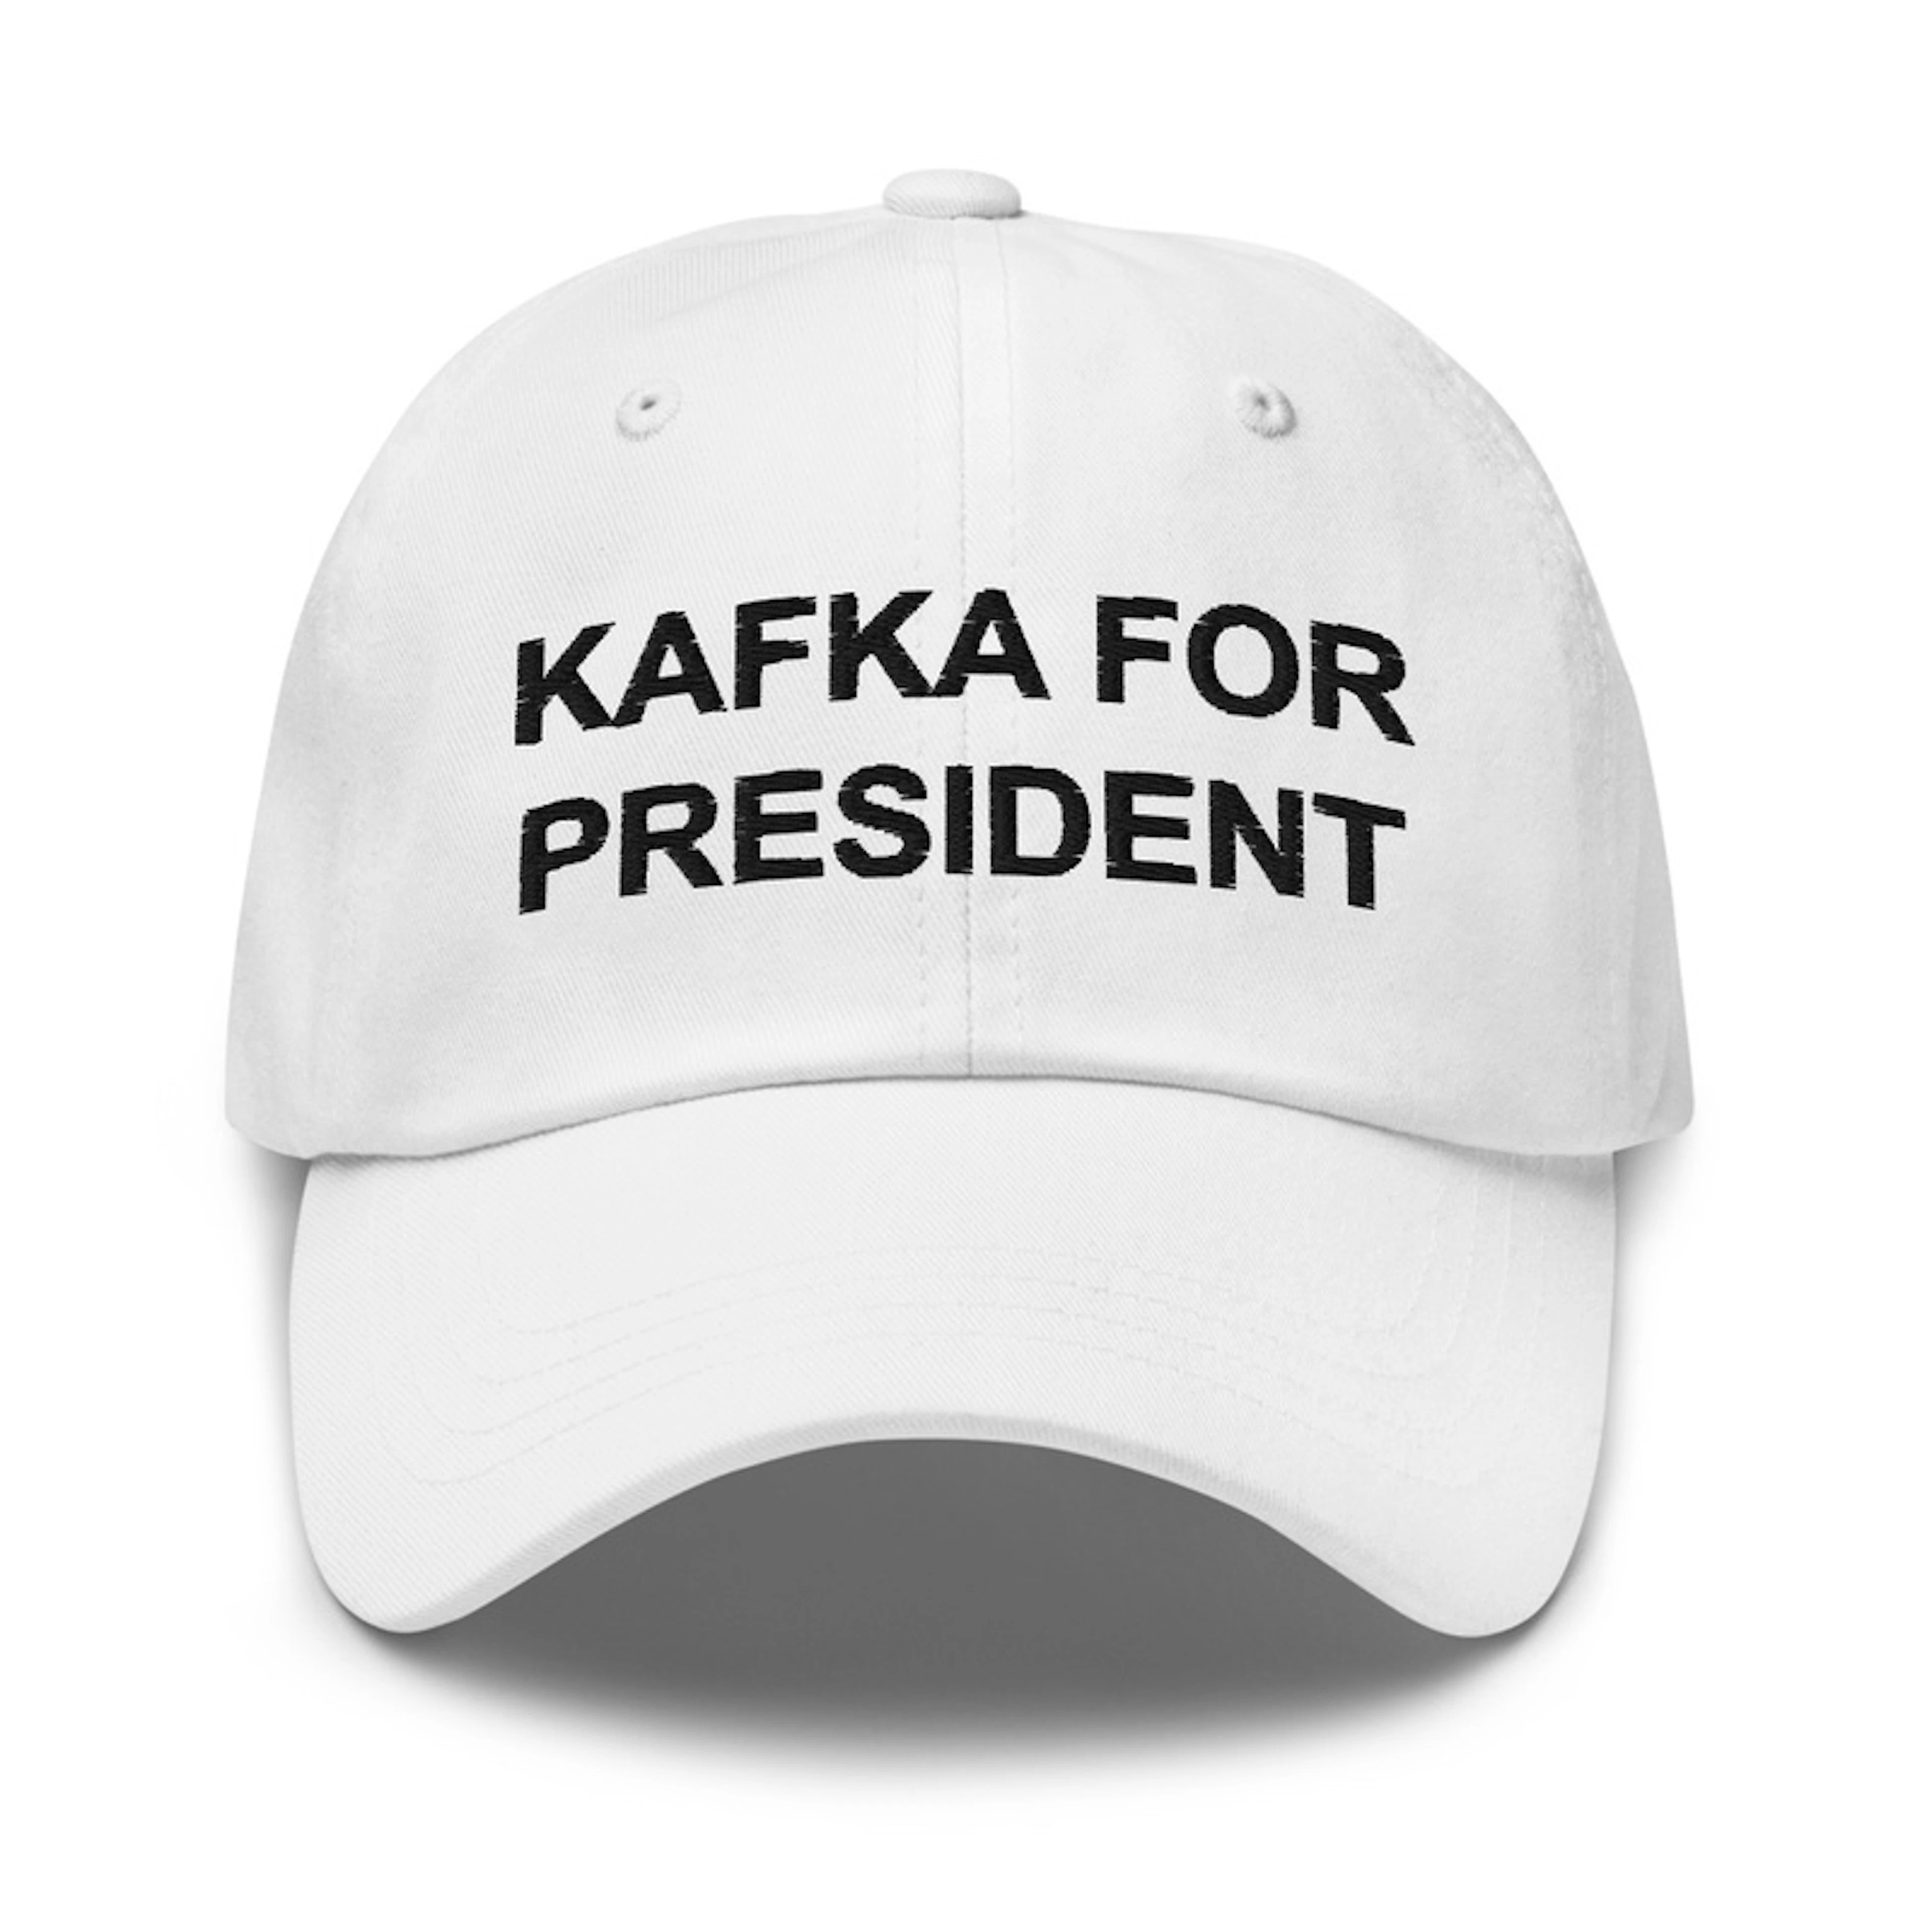 KAFKA FOR PRESIDENT